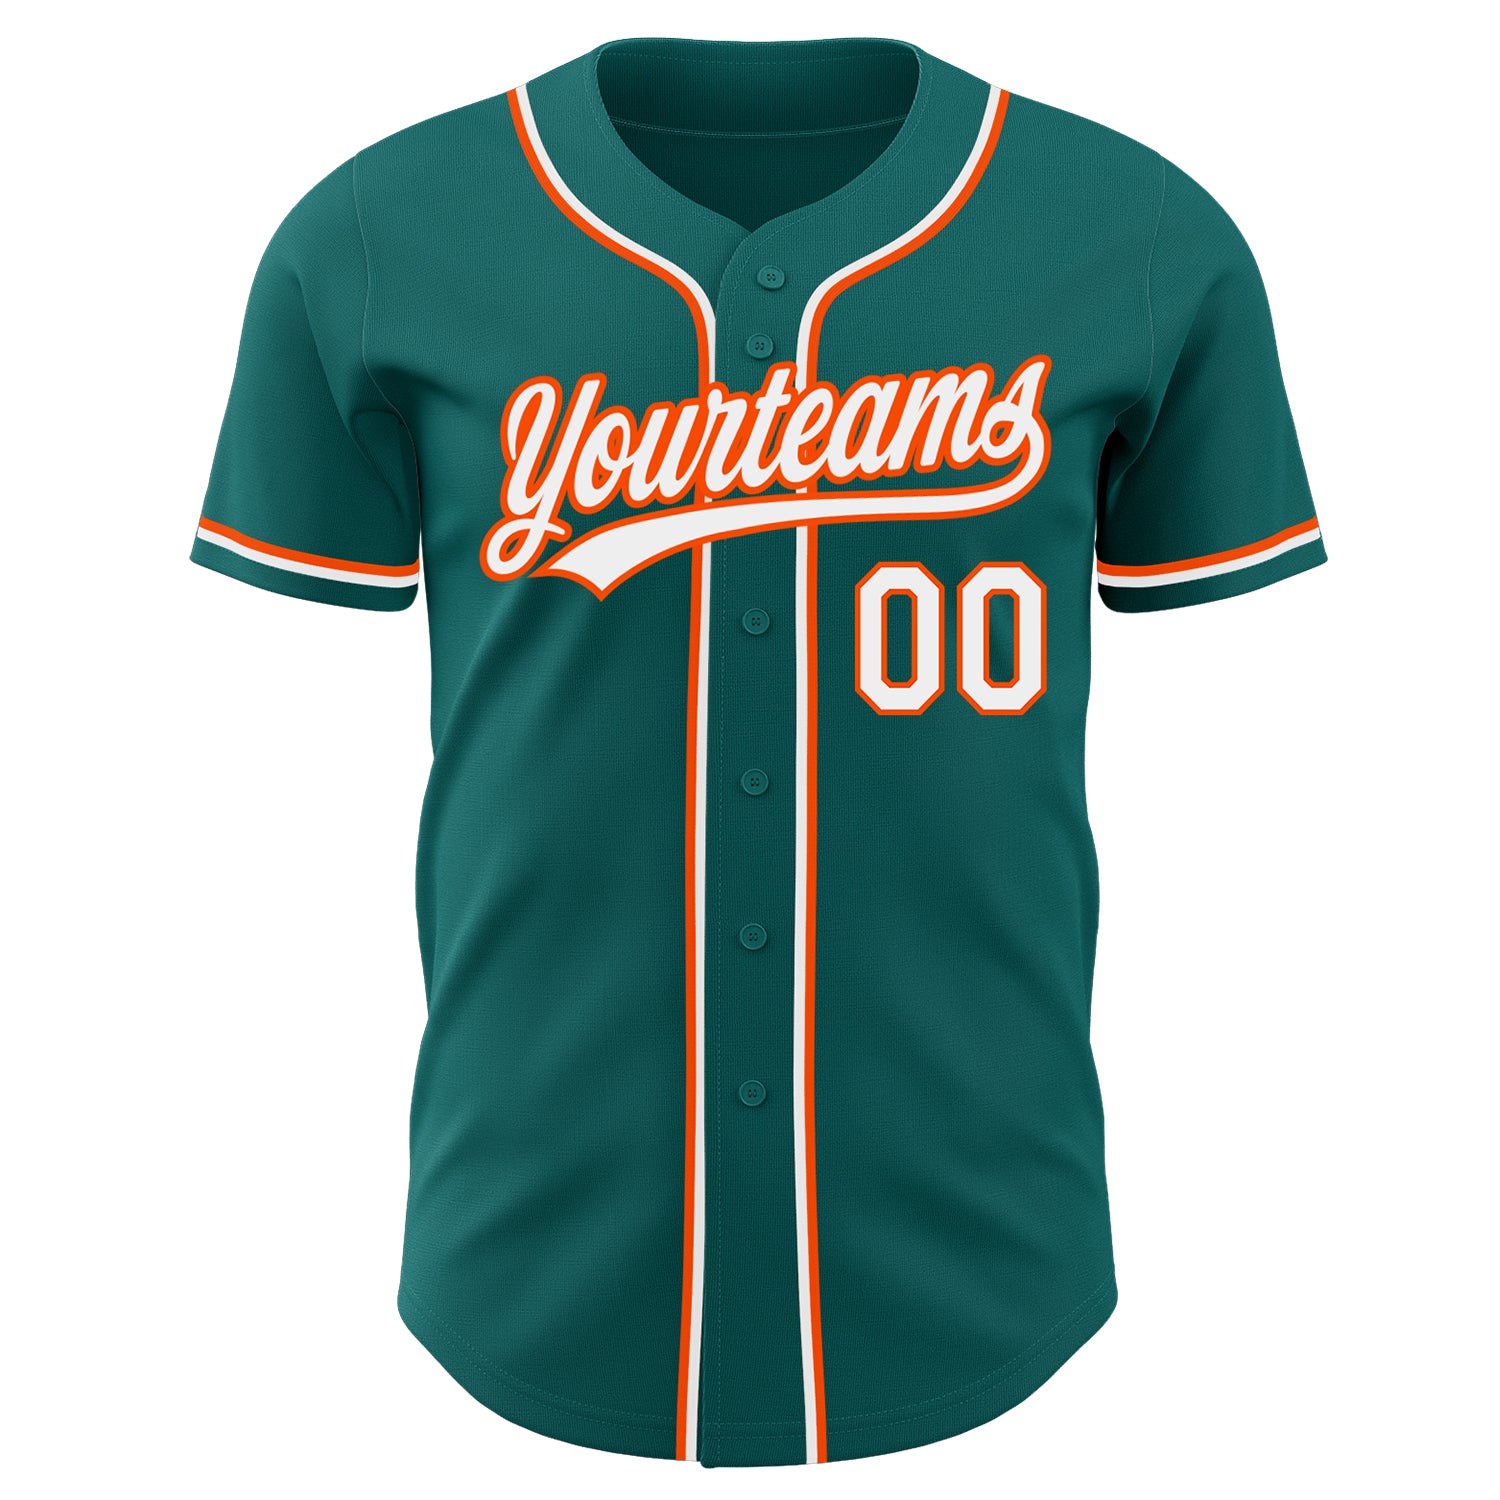 Custom-Teal-White-Orange-Baseball-MLB-Jersey-7621